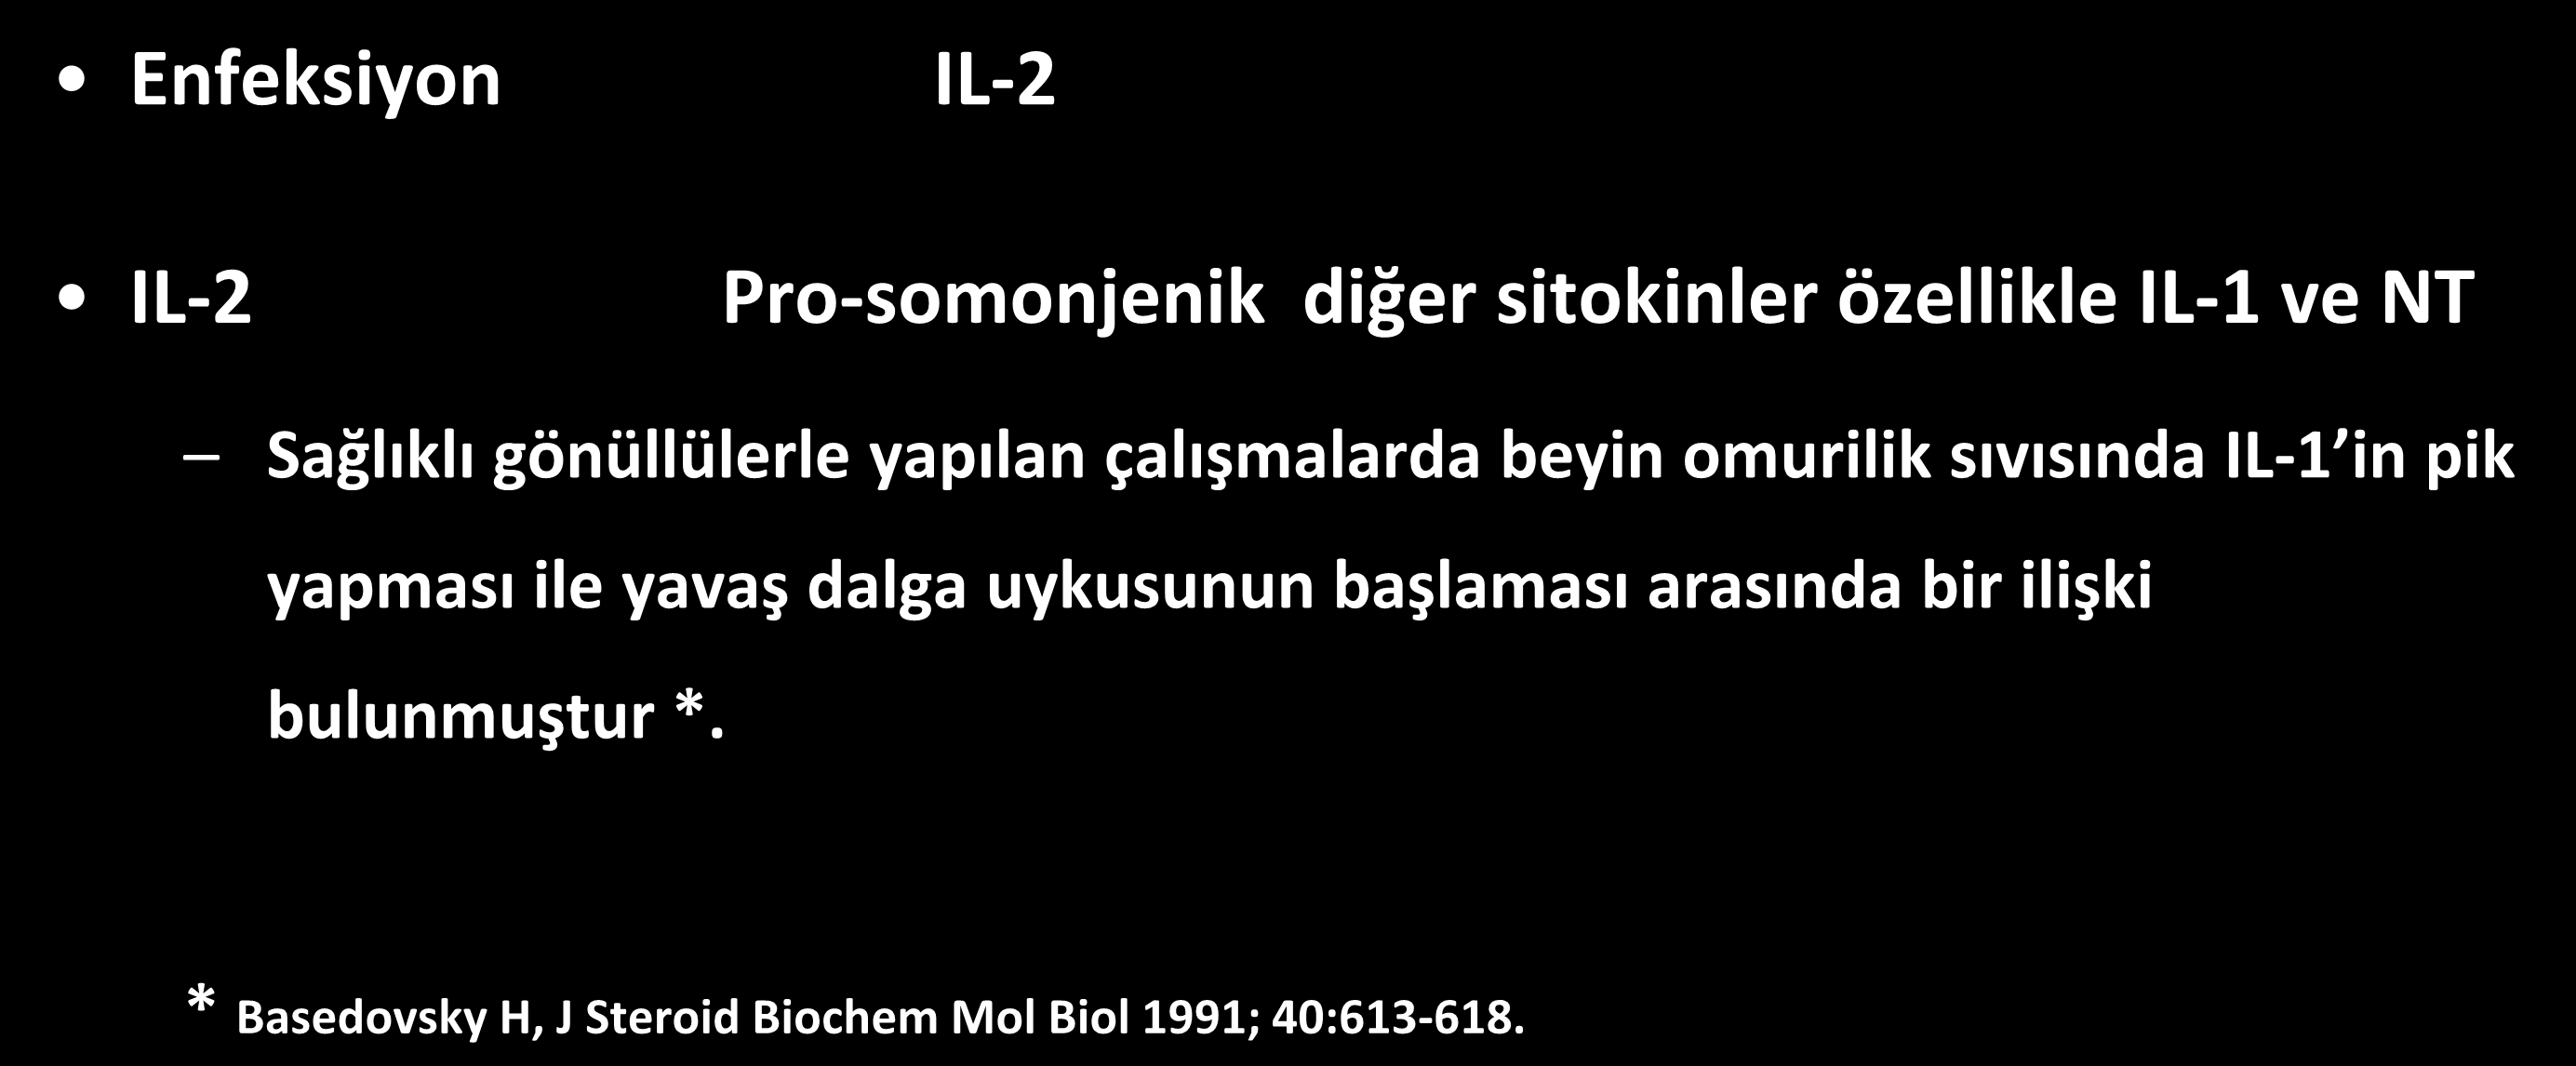 İnfeksiyon & uyku ilişkisi Enfeksiyon IL-2 IL-2 Pro-somonjenik diğer sitokinler özellikle IL-1 ve NT Sağlıklı gönüllülerle yapılan çalışmalarda beyin omurilik